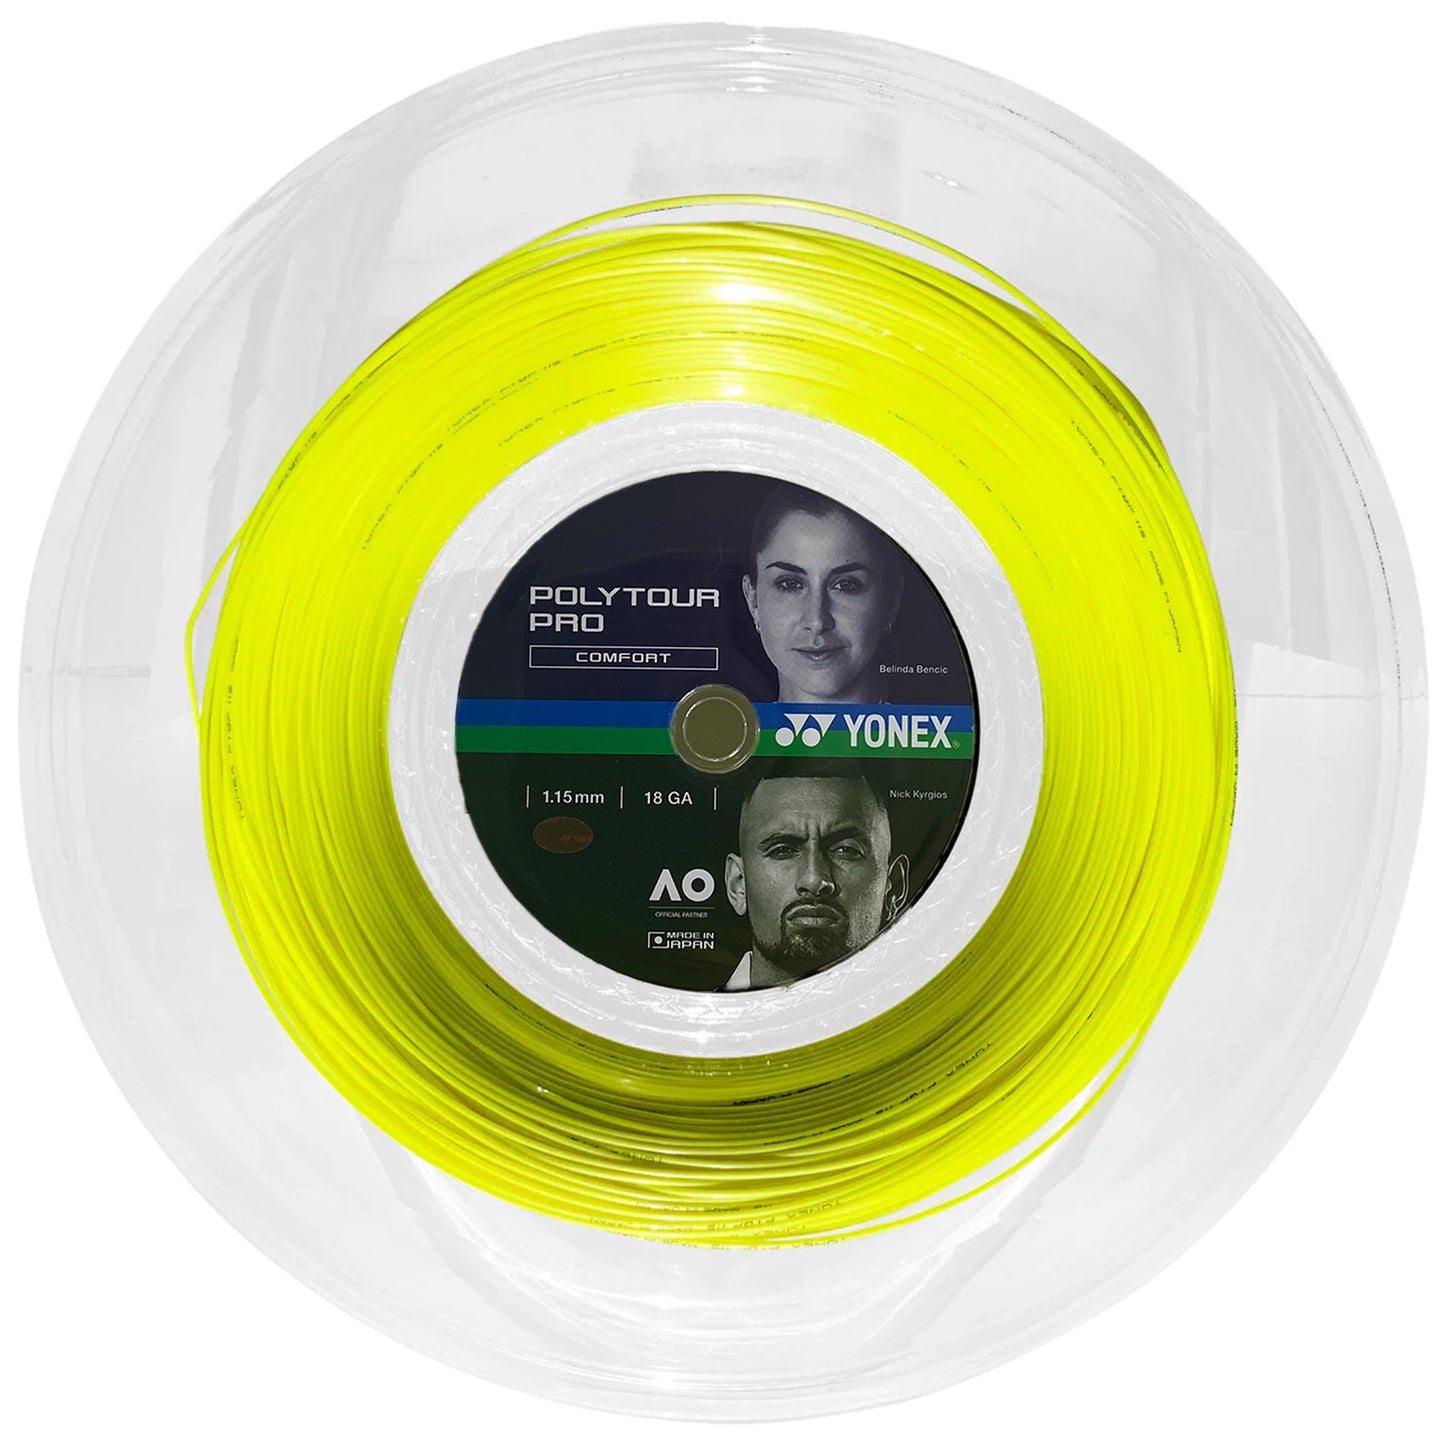 Yonex Polytour Pro 115 Reel (200m) Yellow